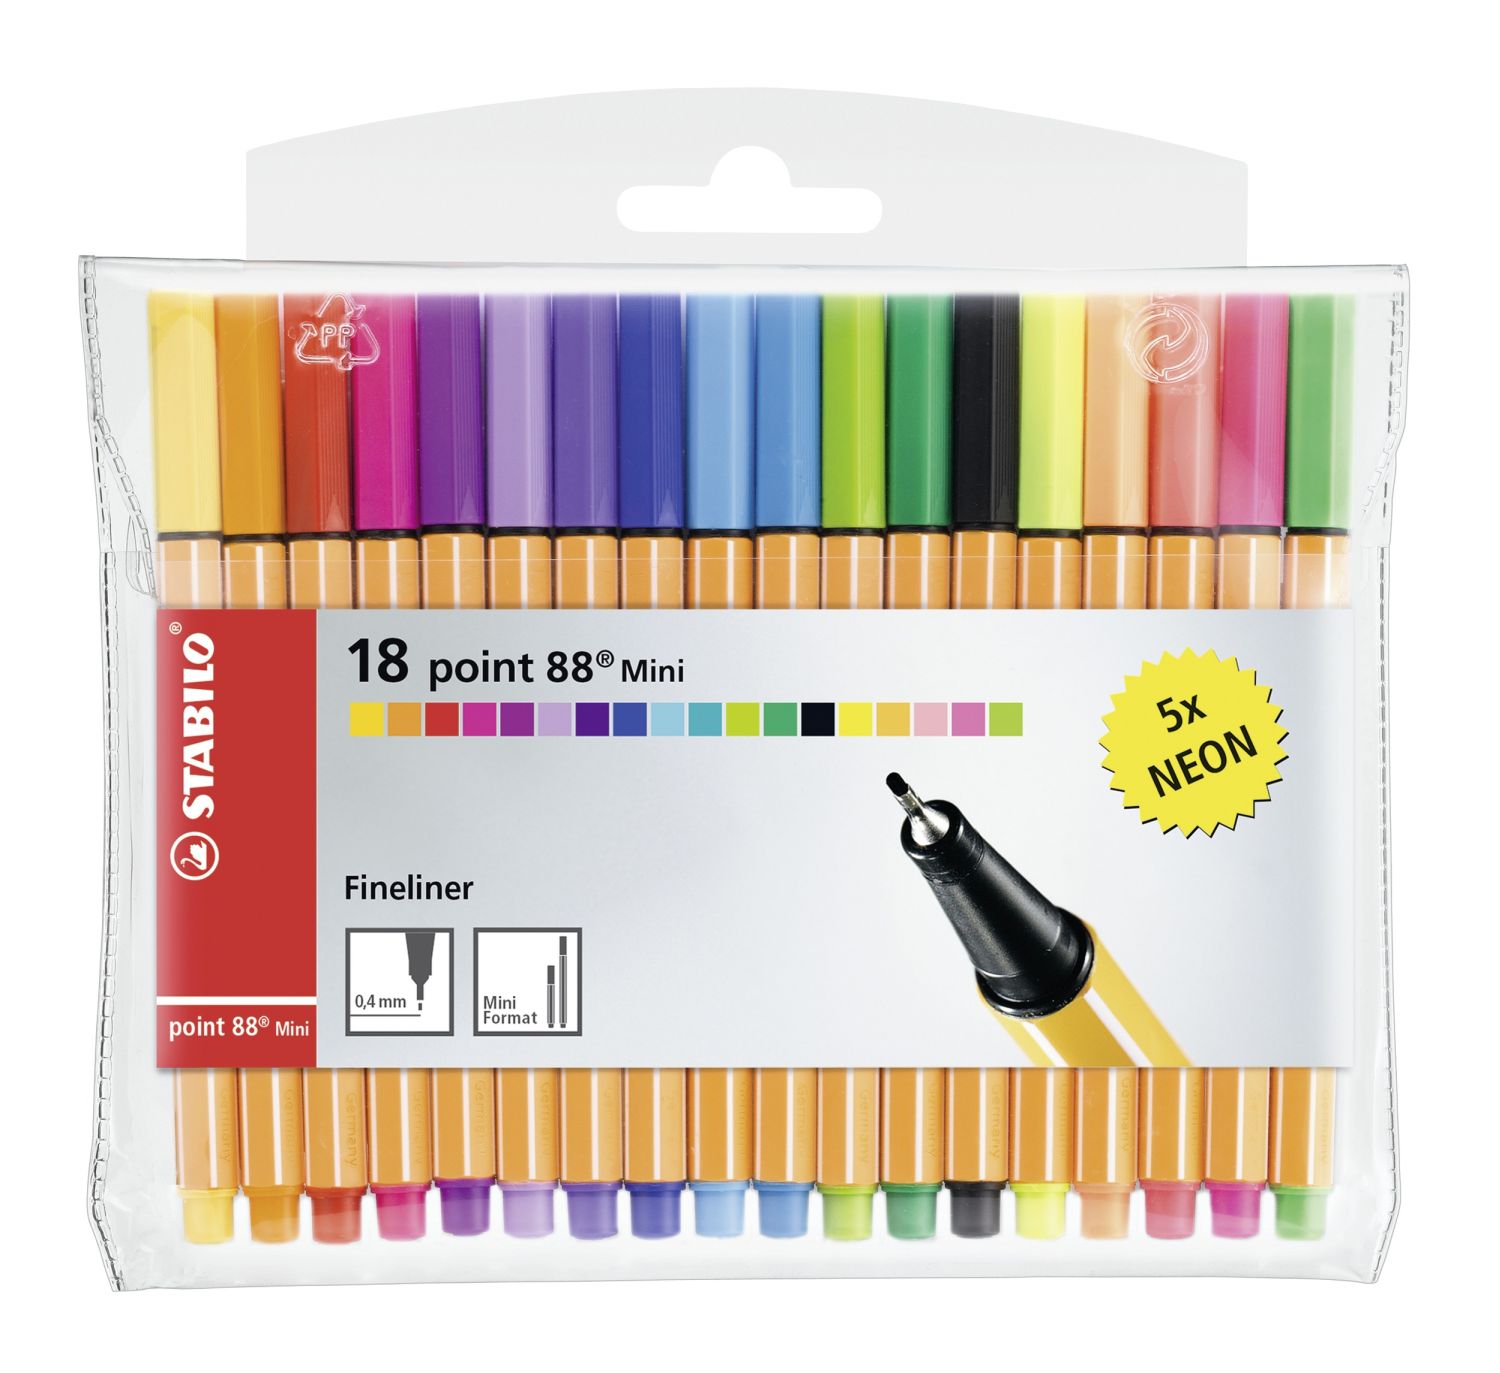 Fineliner - point 88 Mini - 18er Pack - mit 18 verschiedenen Farben inklusive 5 Neonfarben